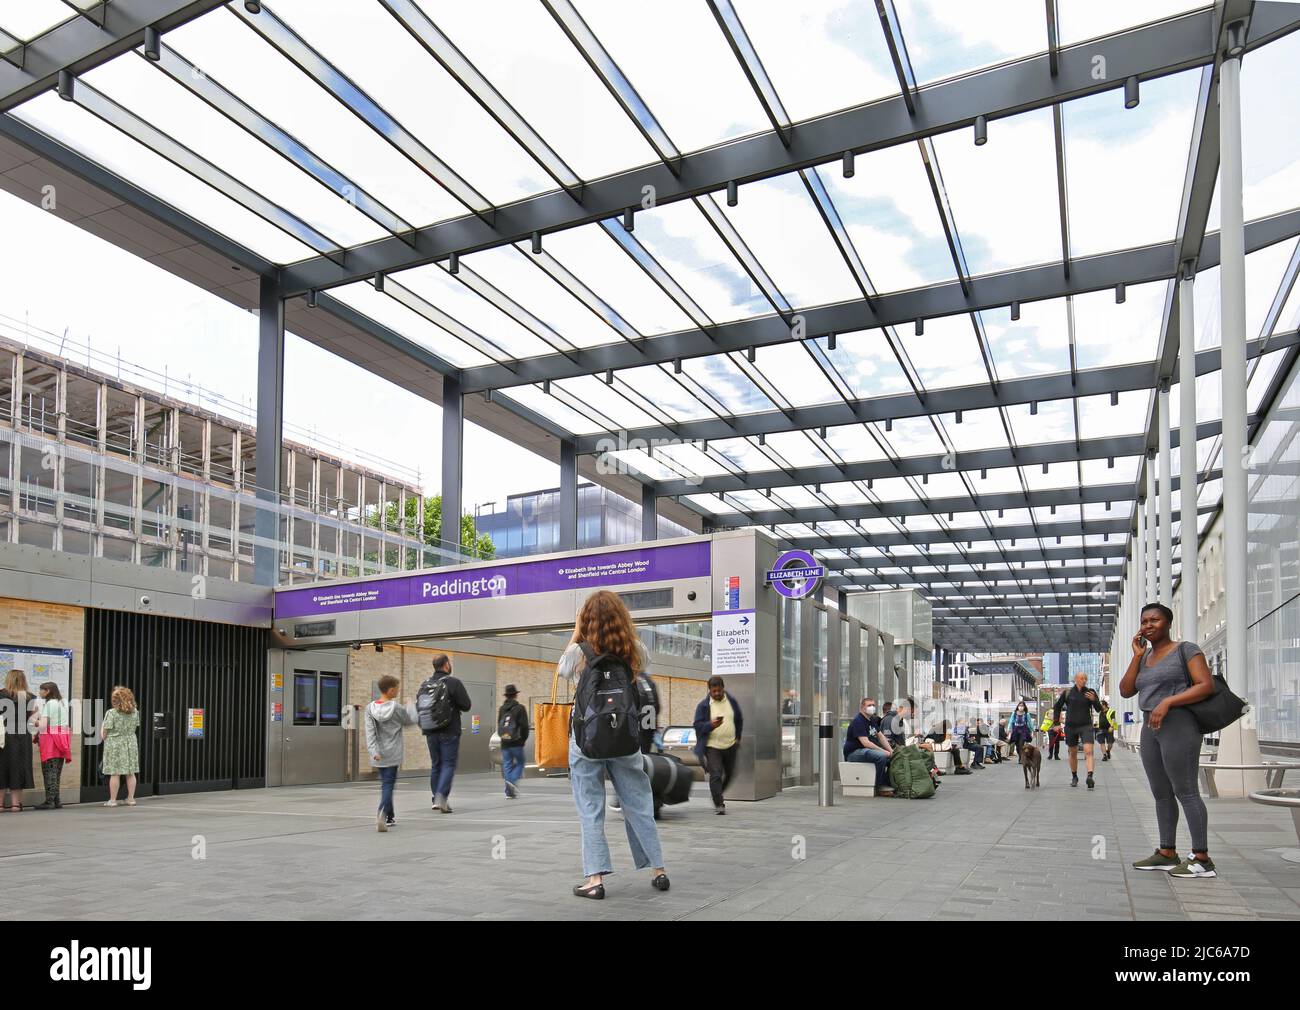 Neue ebenerdende Elizabeth Line (Crossrail)-Konkursanlage am Bahnhof Paddington, London, Großbritannien. Zeigt verglastes Dach und Rolltreppenzugang zu Zügen. Stockfoto